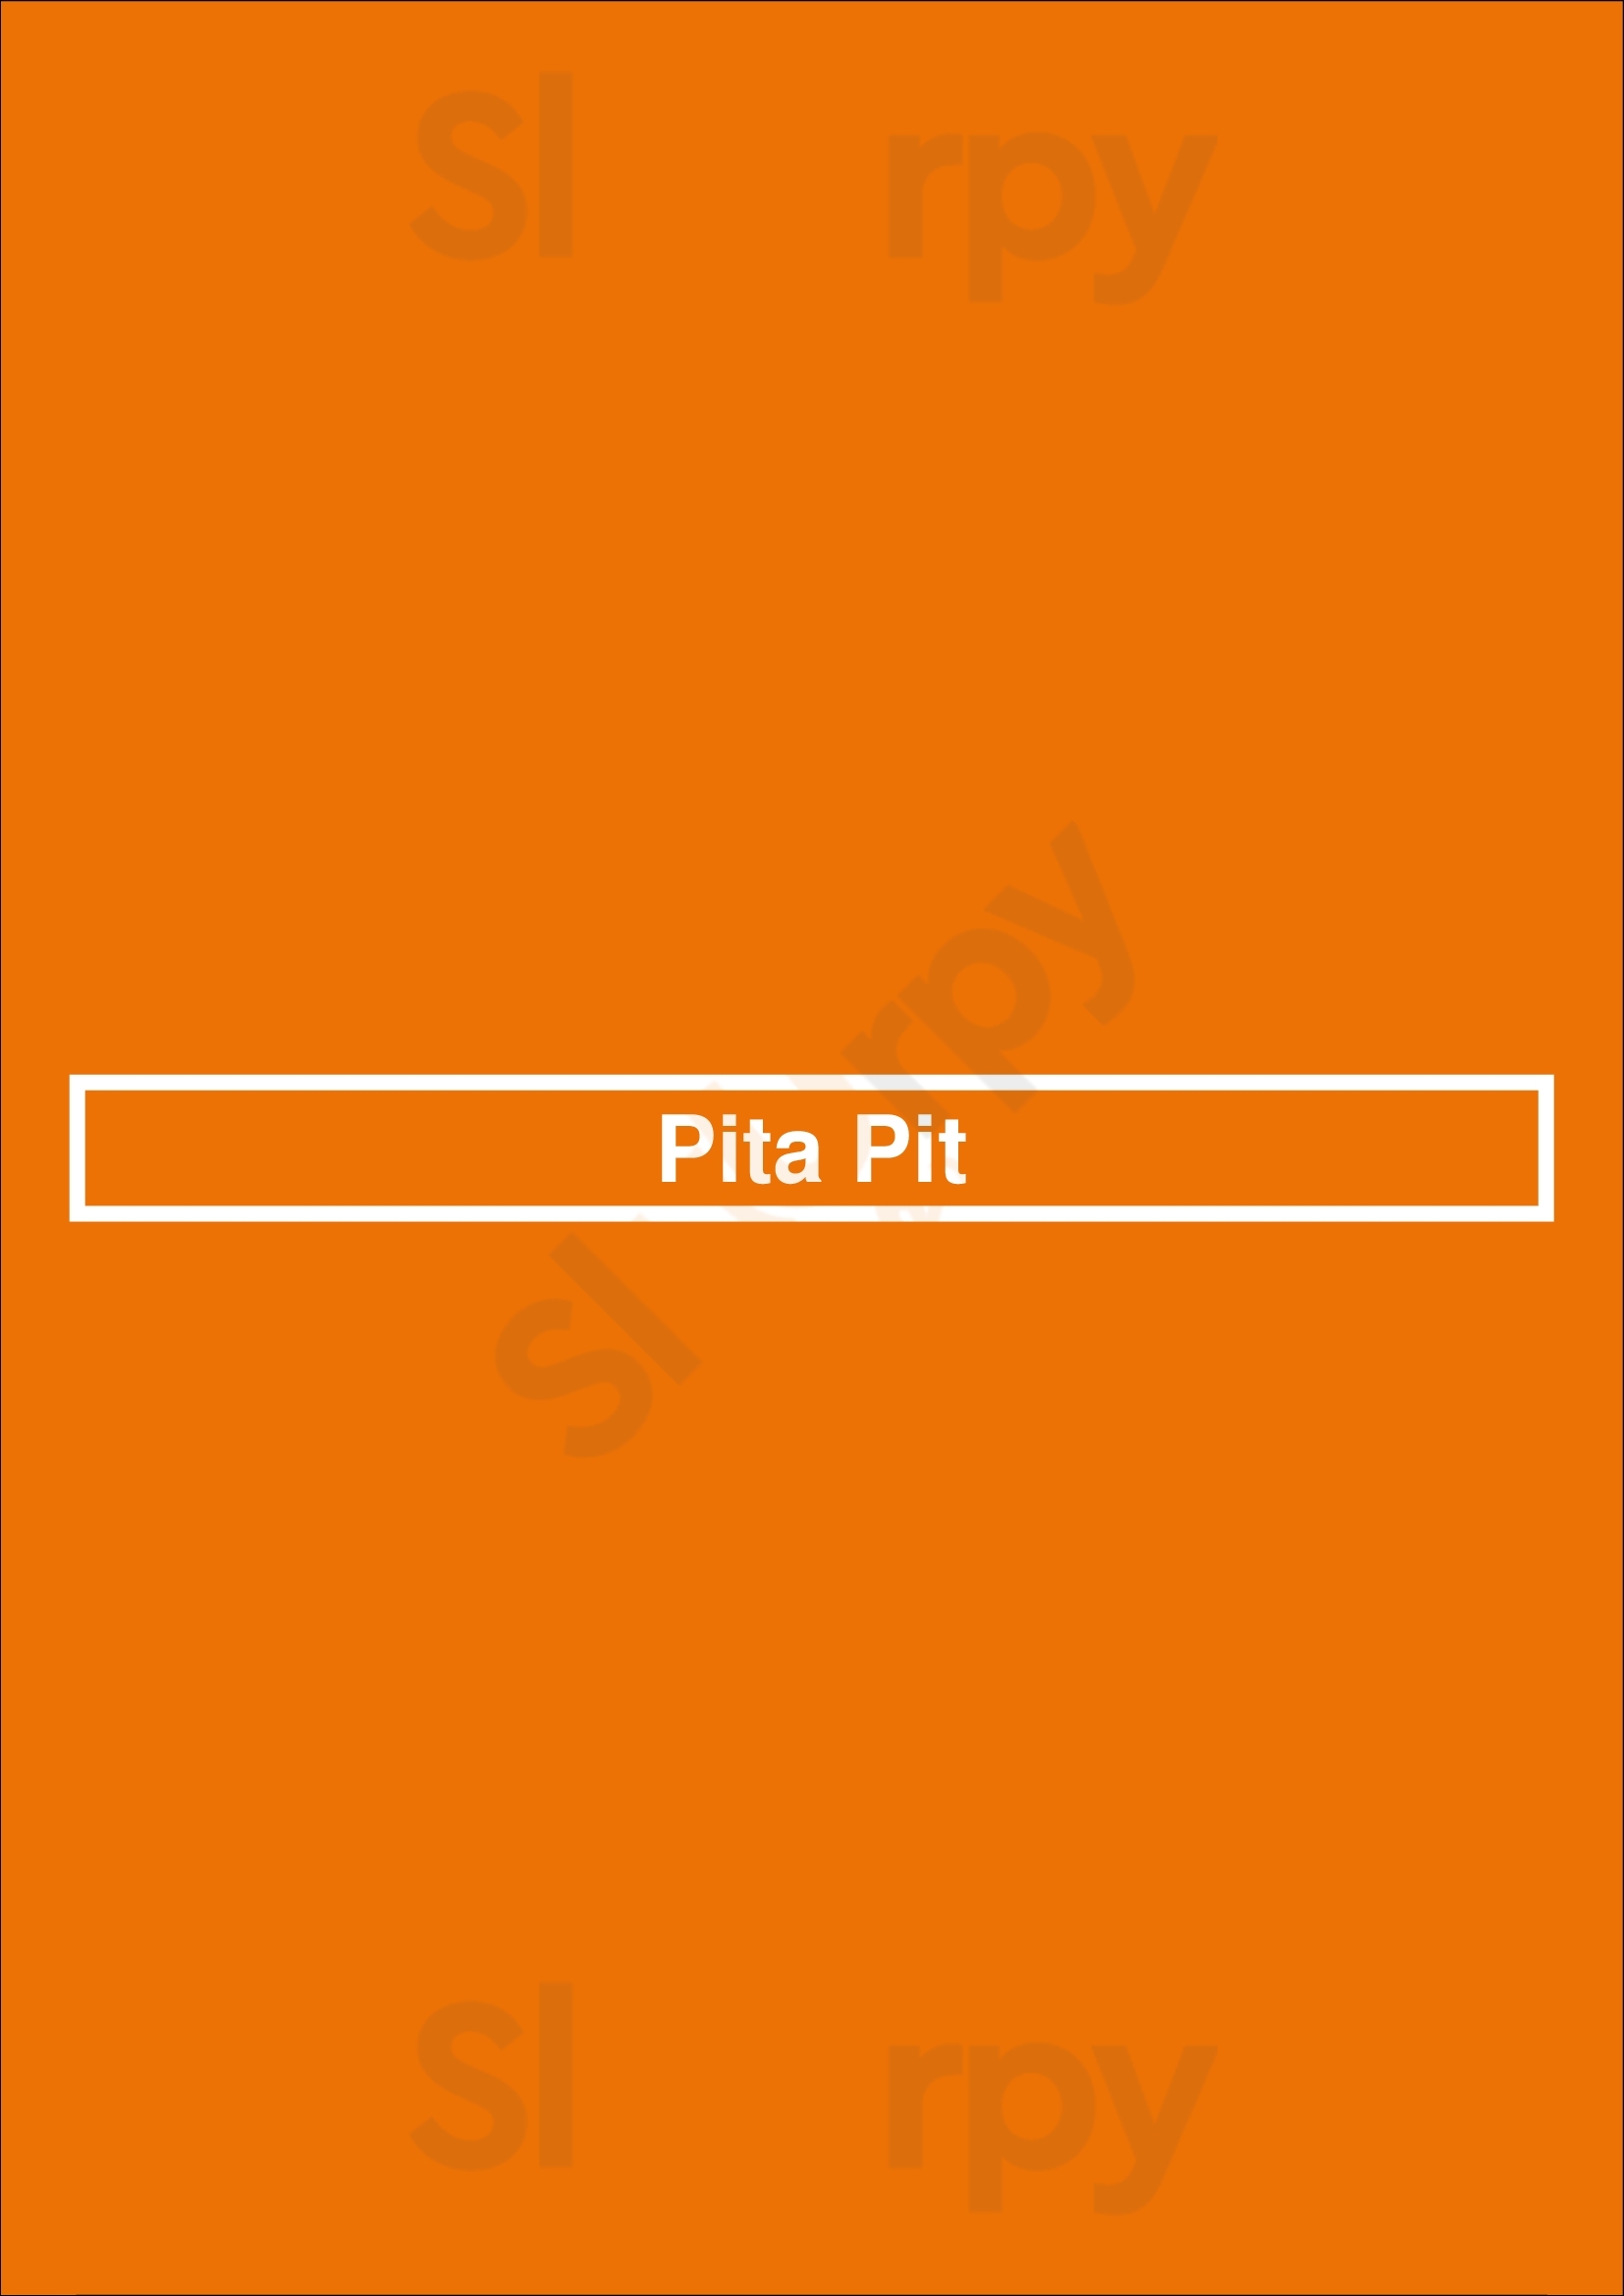 Pita Pit Vancouver Menu - 1